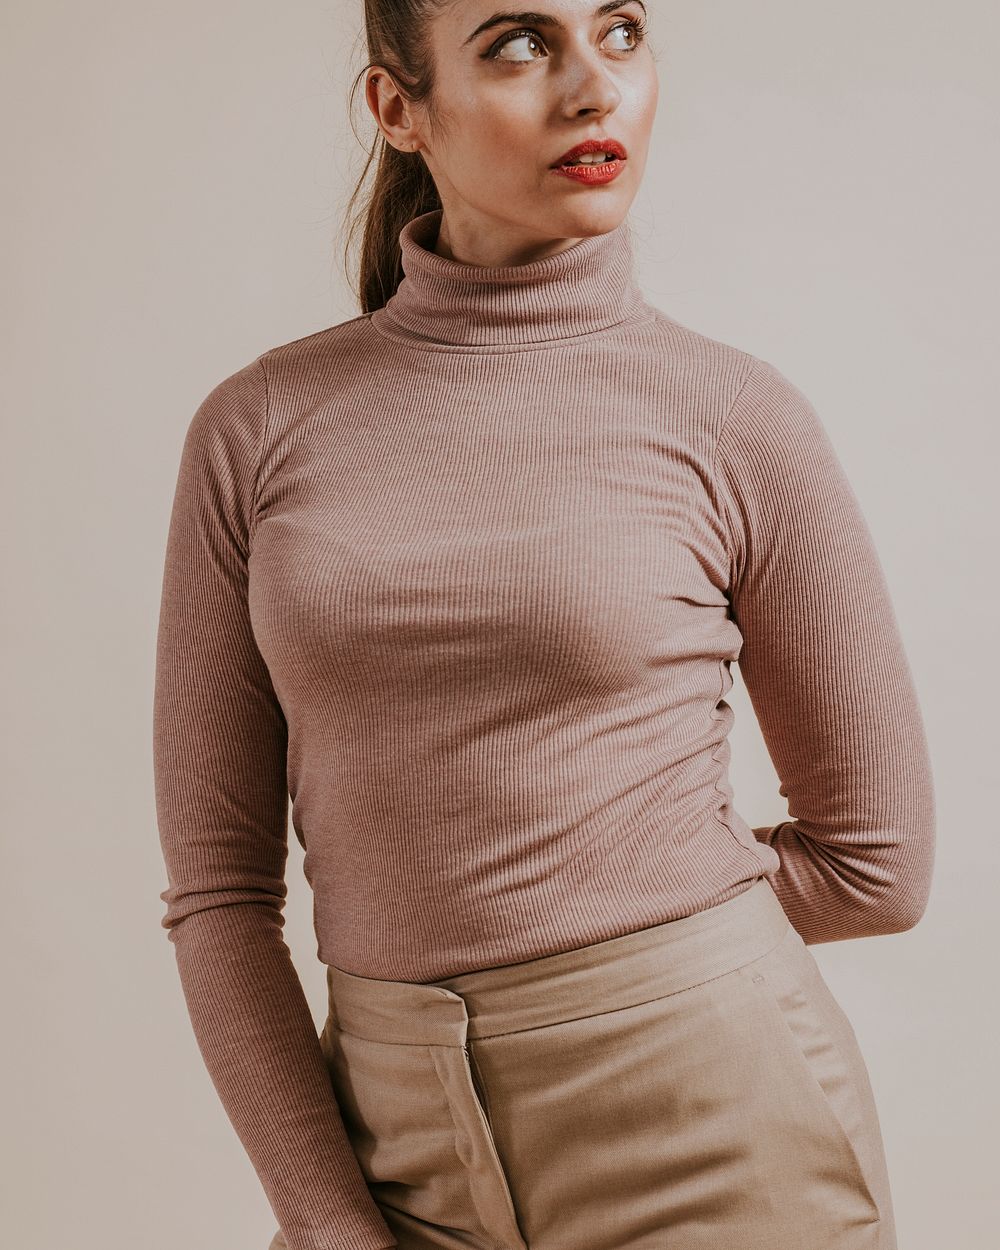 Woman wearing beige turtleneck, Winter fashion